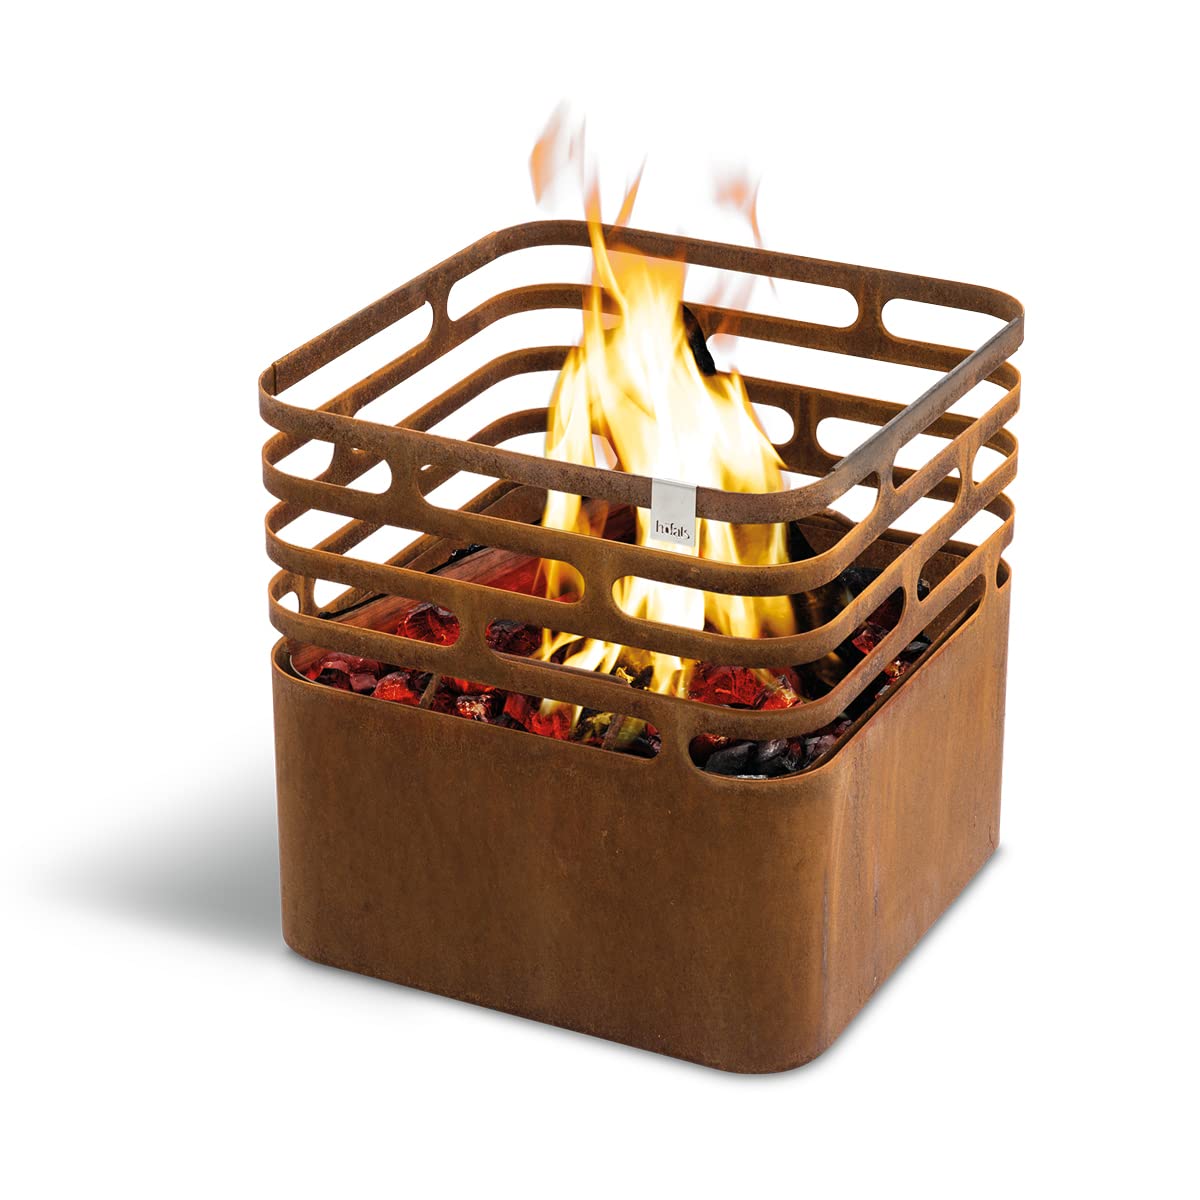 höfats - Cube Feuerkorb - Feuerschale, Grill, Hocker und Tisch - Feuerstelle für Garten und Terrasse - Corten-Stahl - Rost-Optik - mit integrierter Löschfunktion